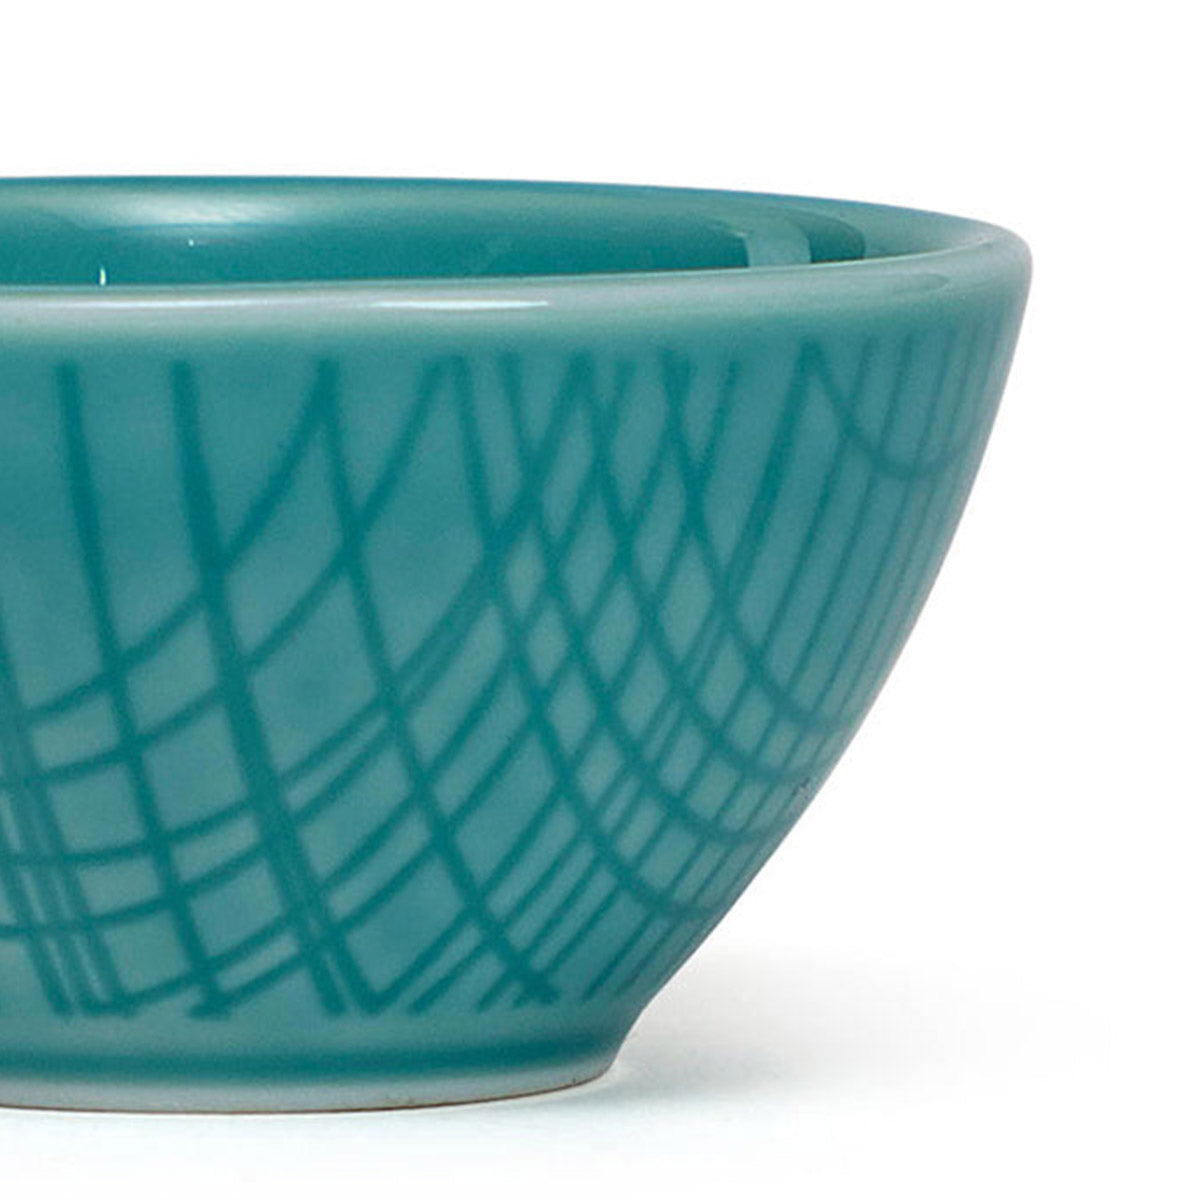 Rosenthal Color Aqua Dip Bowl